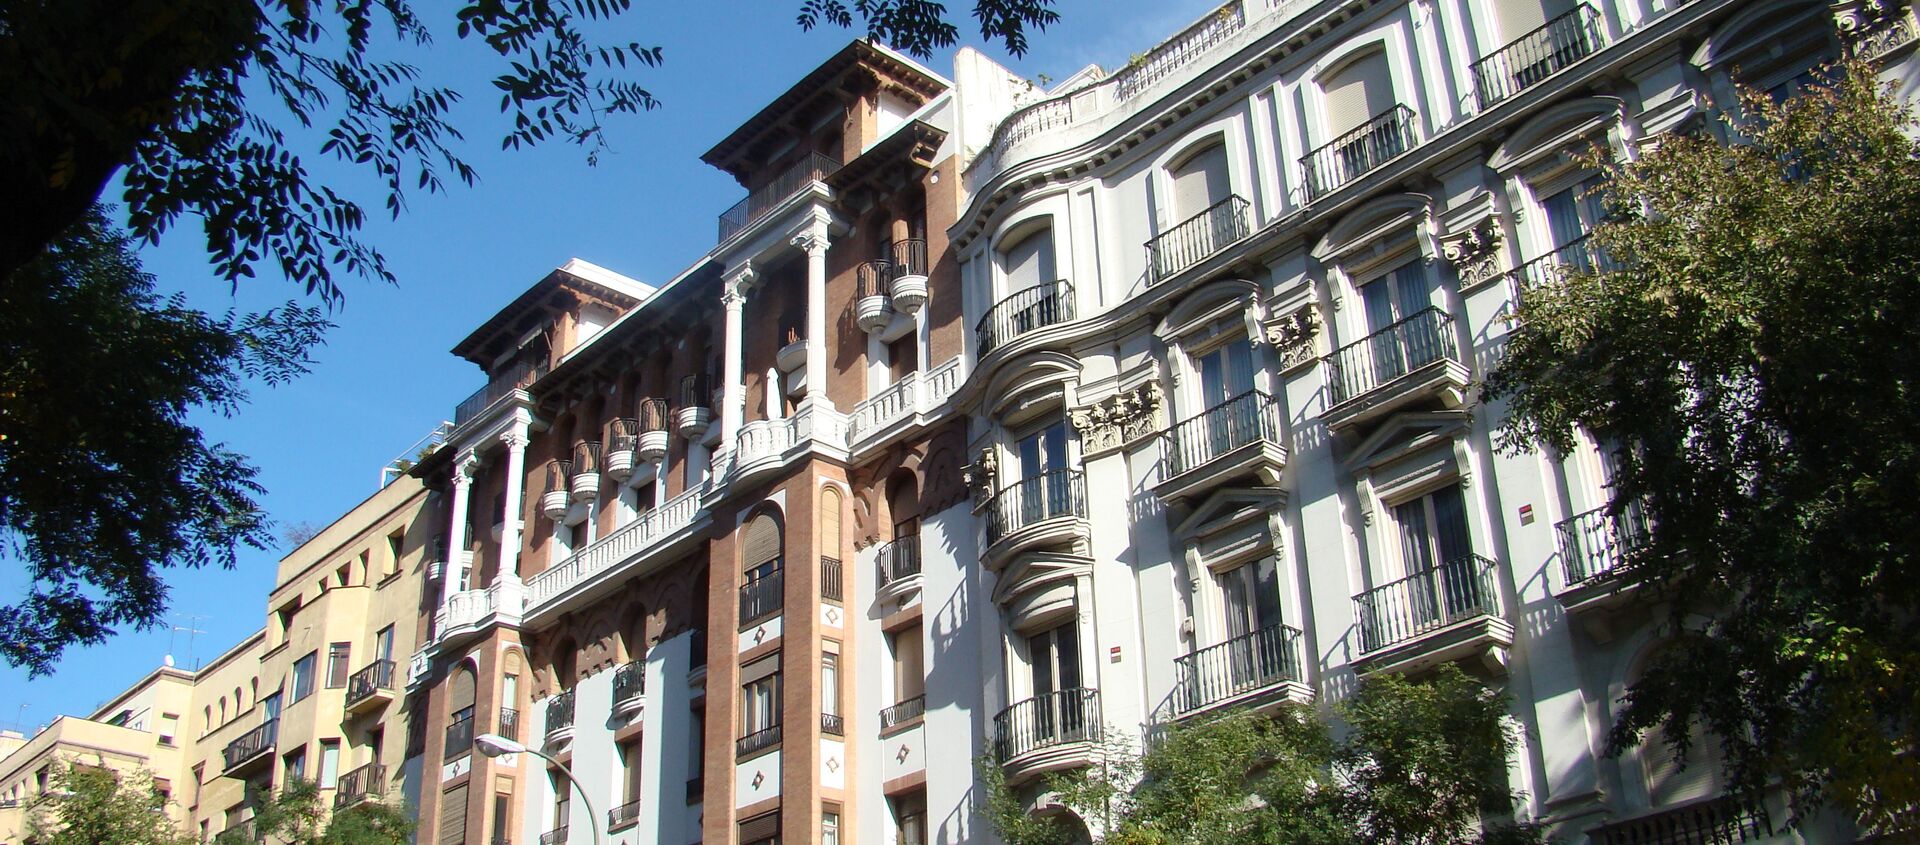 Edificio en Madrid - Sputnik Mundo, 1920, 10.12.2015